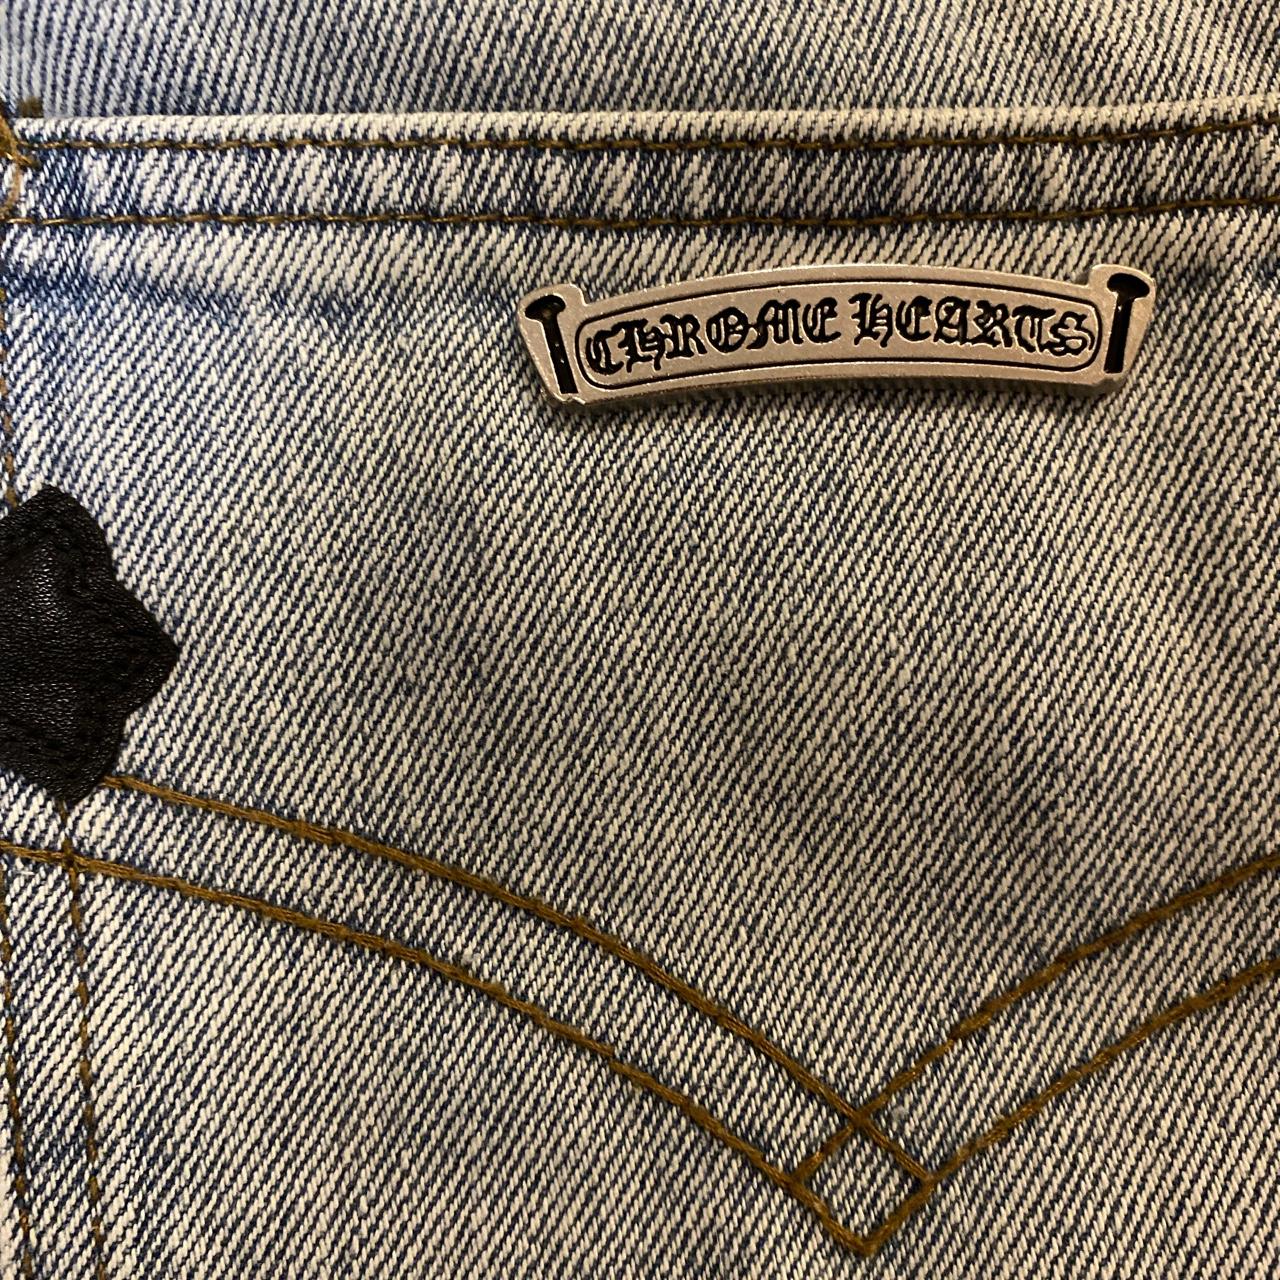 Chrome Hearts Vintage Levi's Jeans